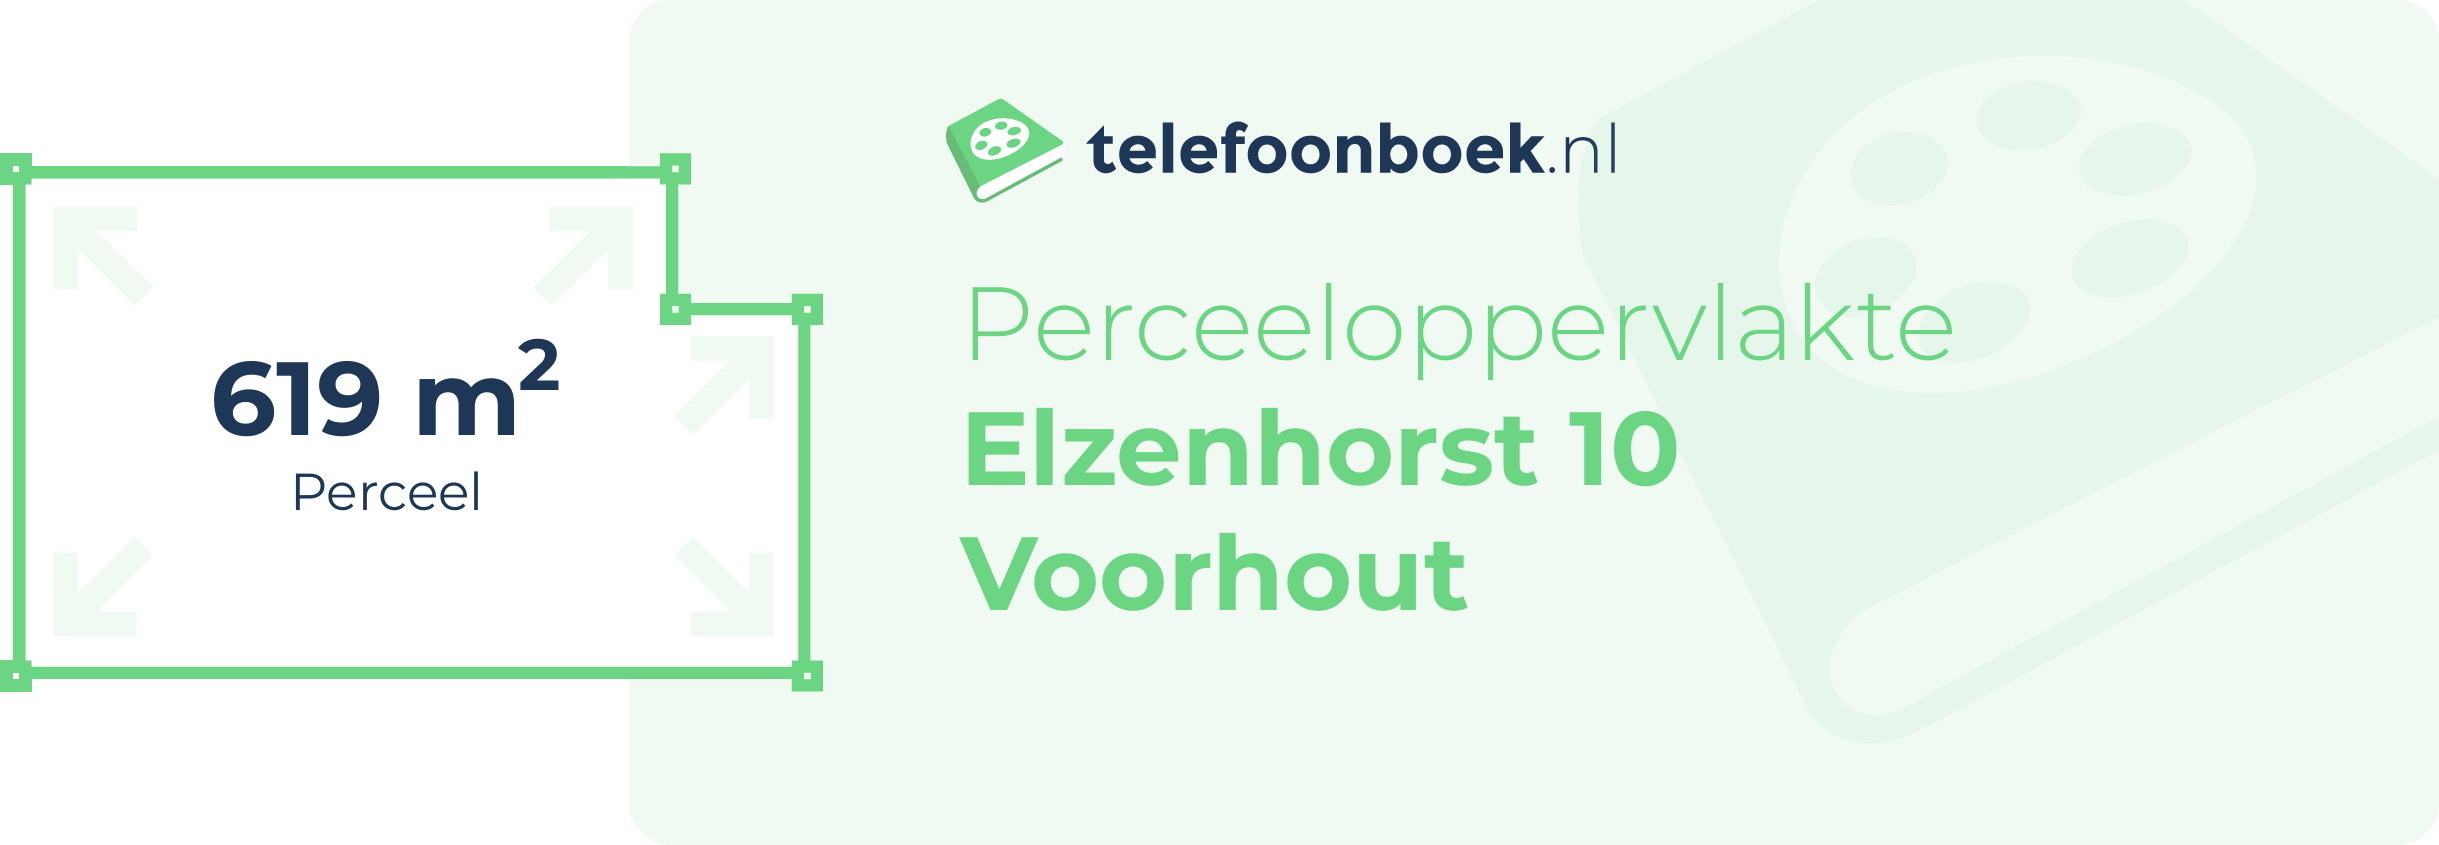 Perceeloppervlakte Elzenhorst 10 Voorhout